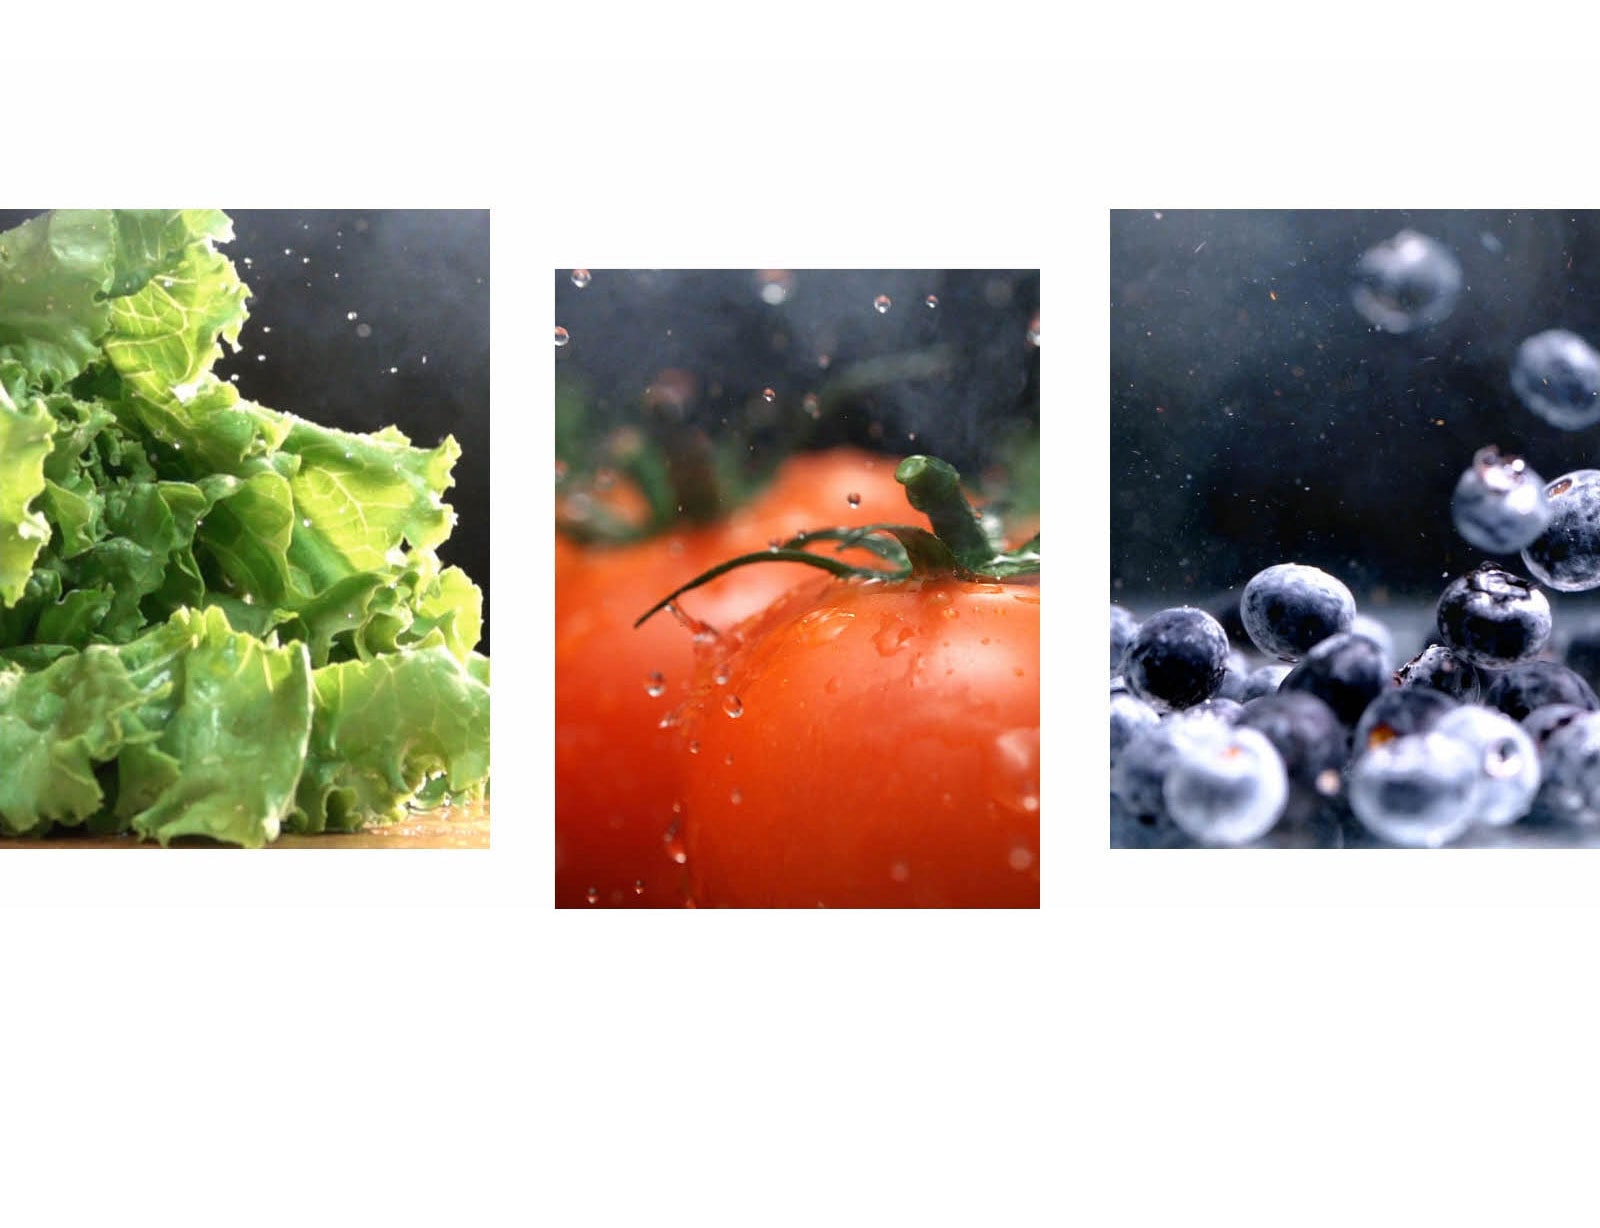 Uz video izbliza na kojem voda kaplje iz hrskave zelene salate, još jedan video izbliza prikazuje kako voda pada na svježe crvene rajčice, uz još jedan video svijetlih, mokrih borovnica koje se kreću okolo.